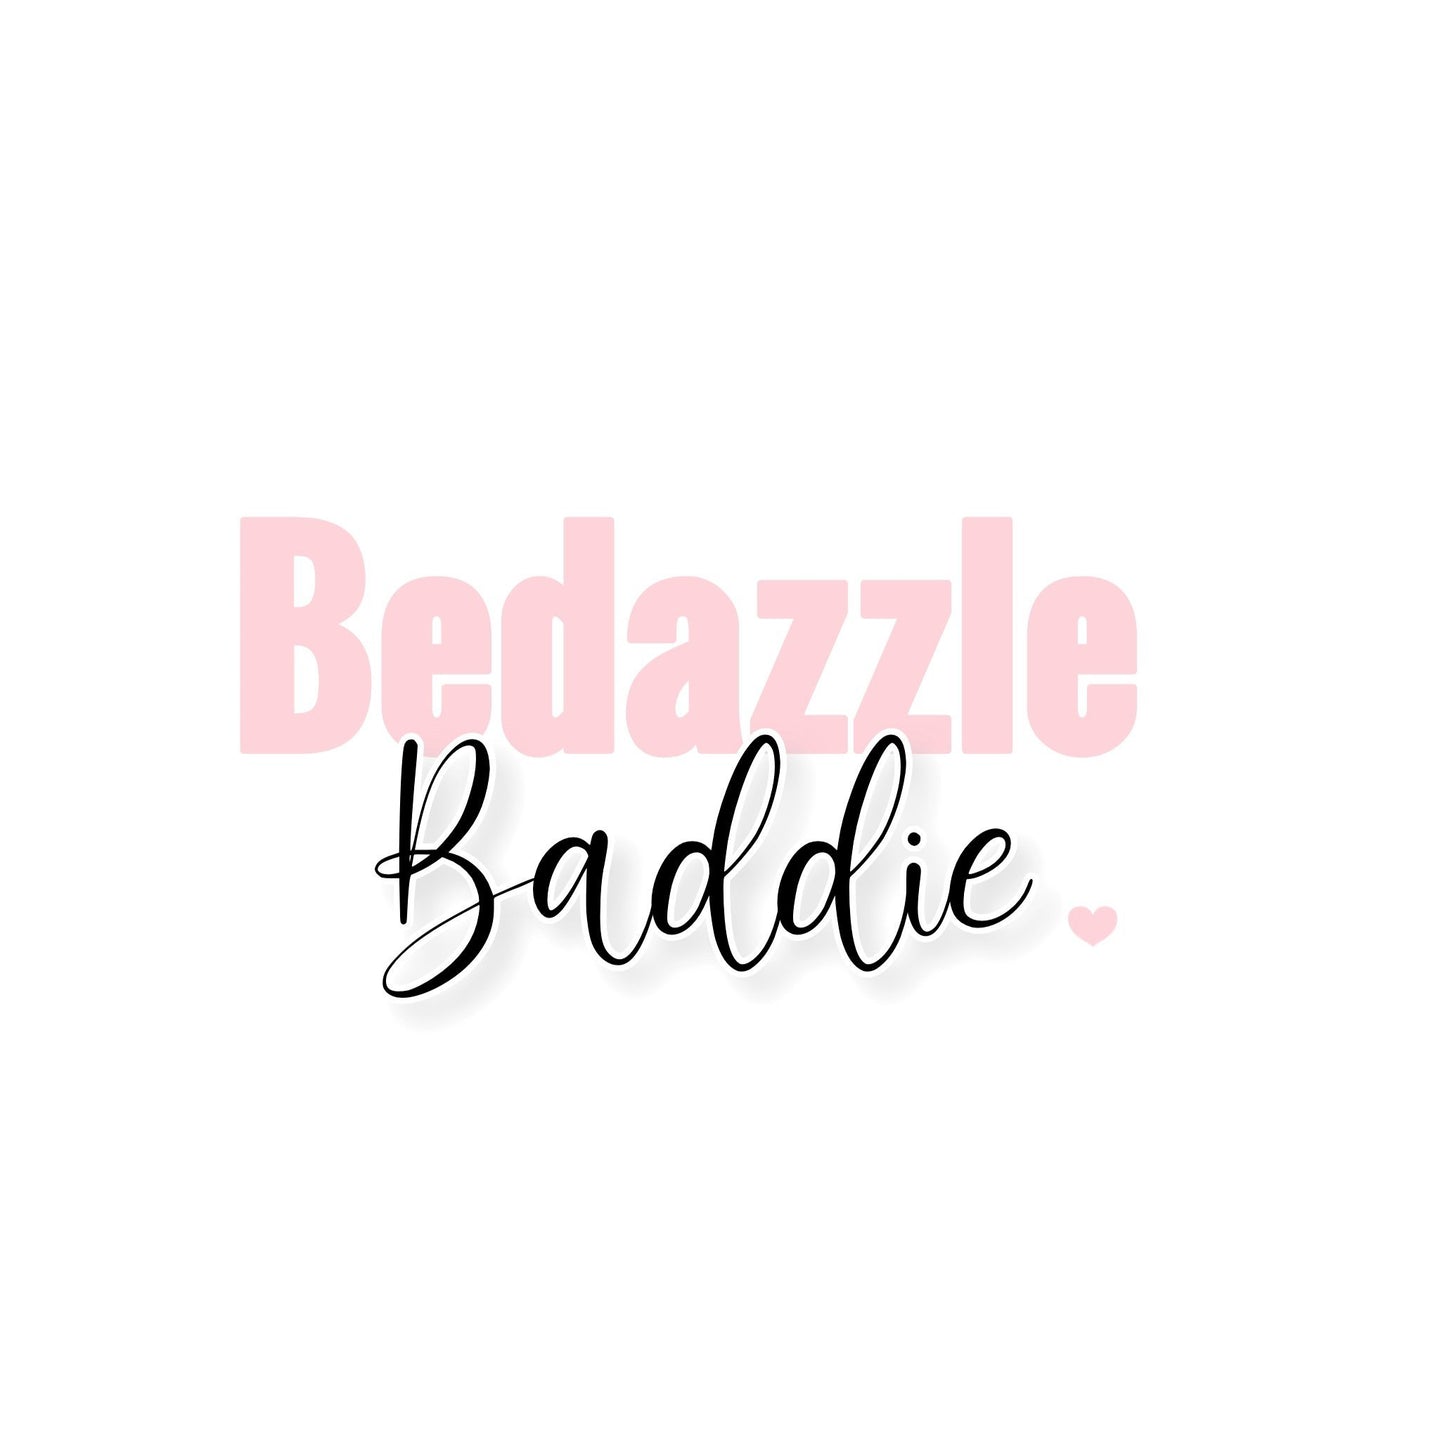 Reshipment - Bedazzle Baddie